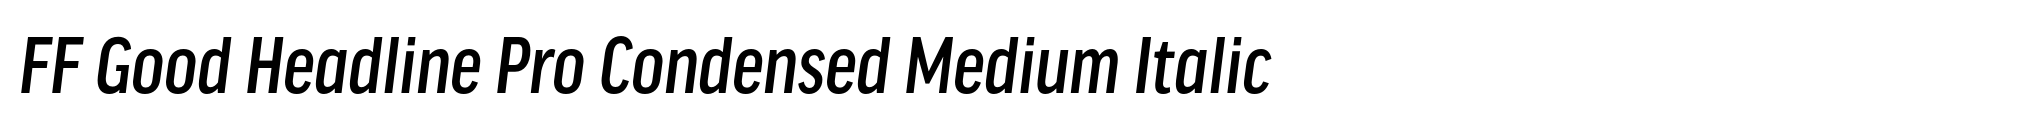 FF Good Headline Pro Condensed Medium Italic image